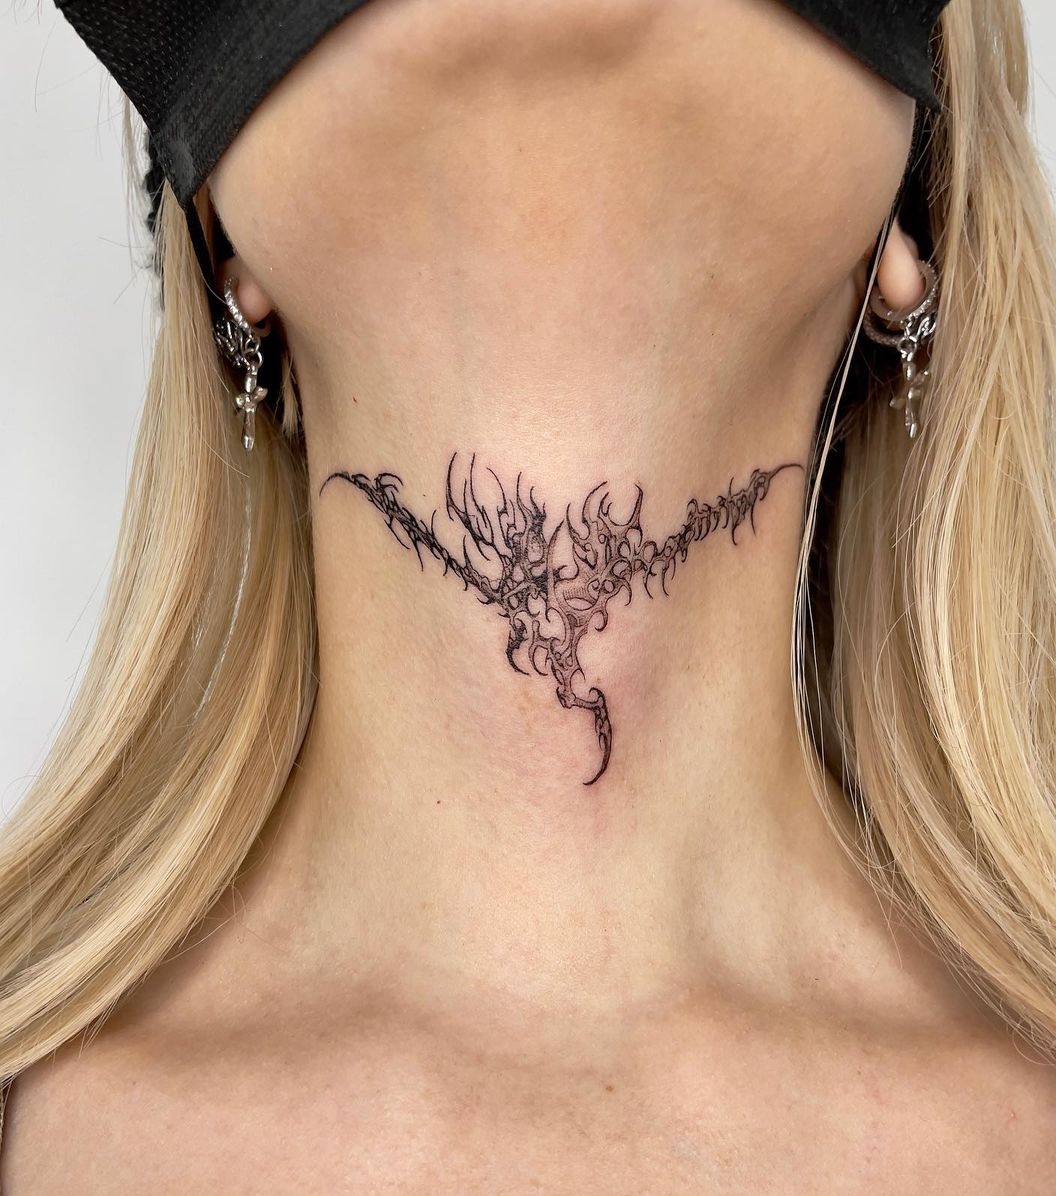 Top 79 Best Throat Tattoos Ideas  2021 Inspiration Guide  Throat tattoo  Full neck tattoos Neck tattoo